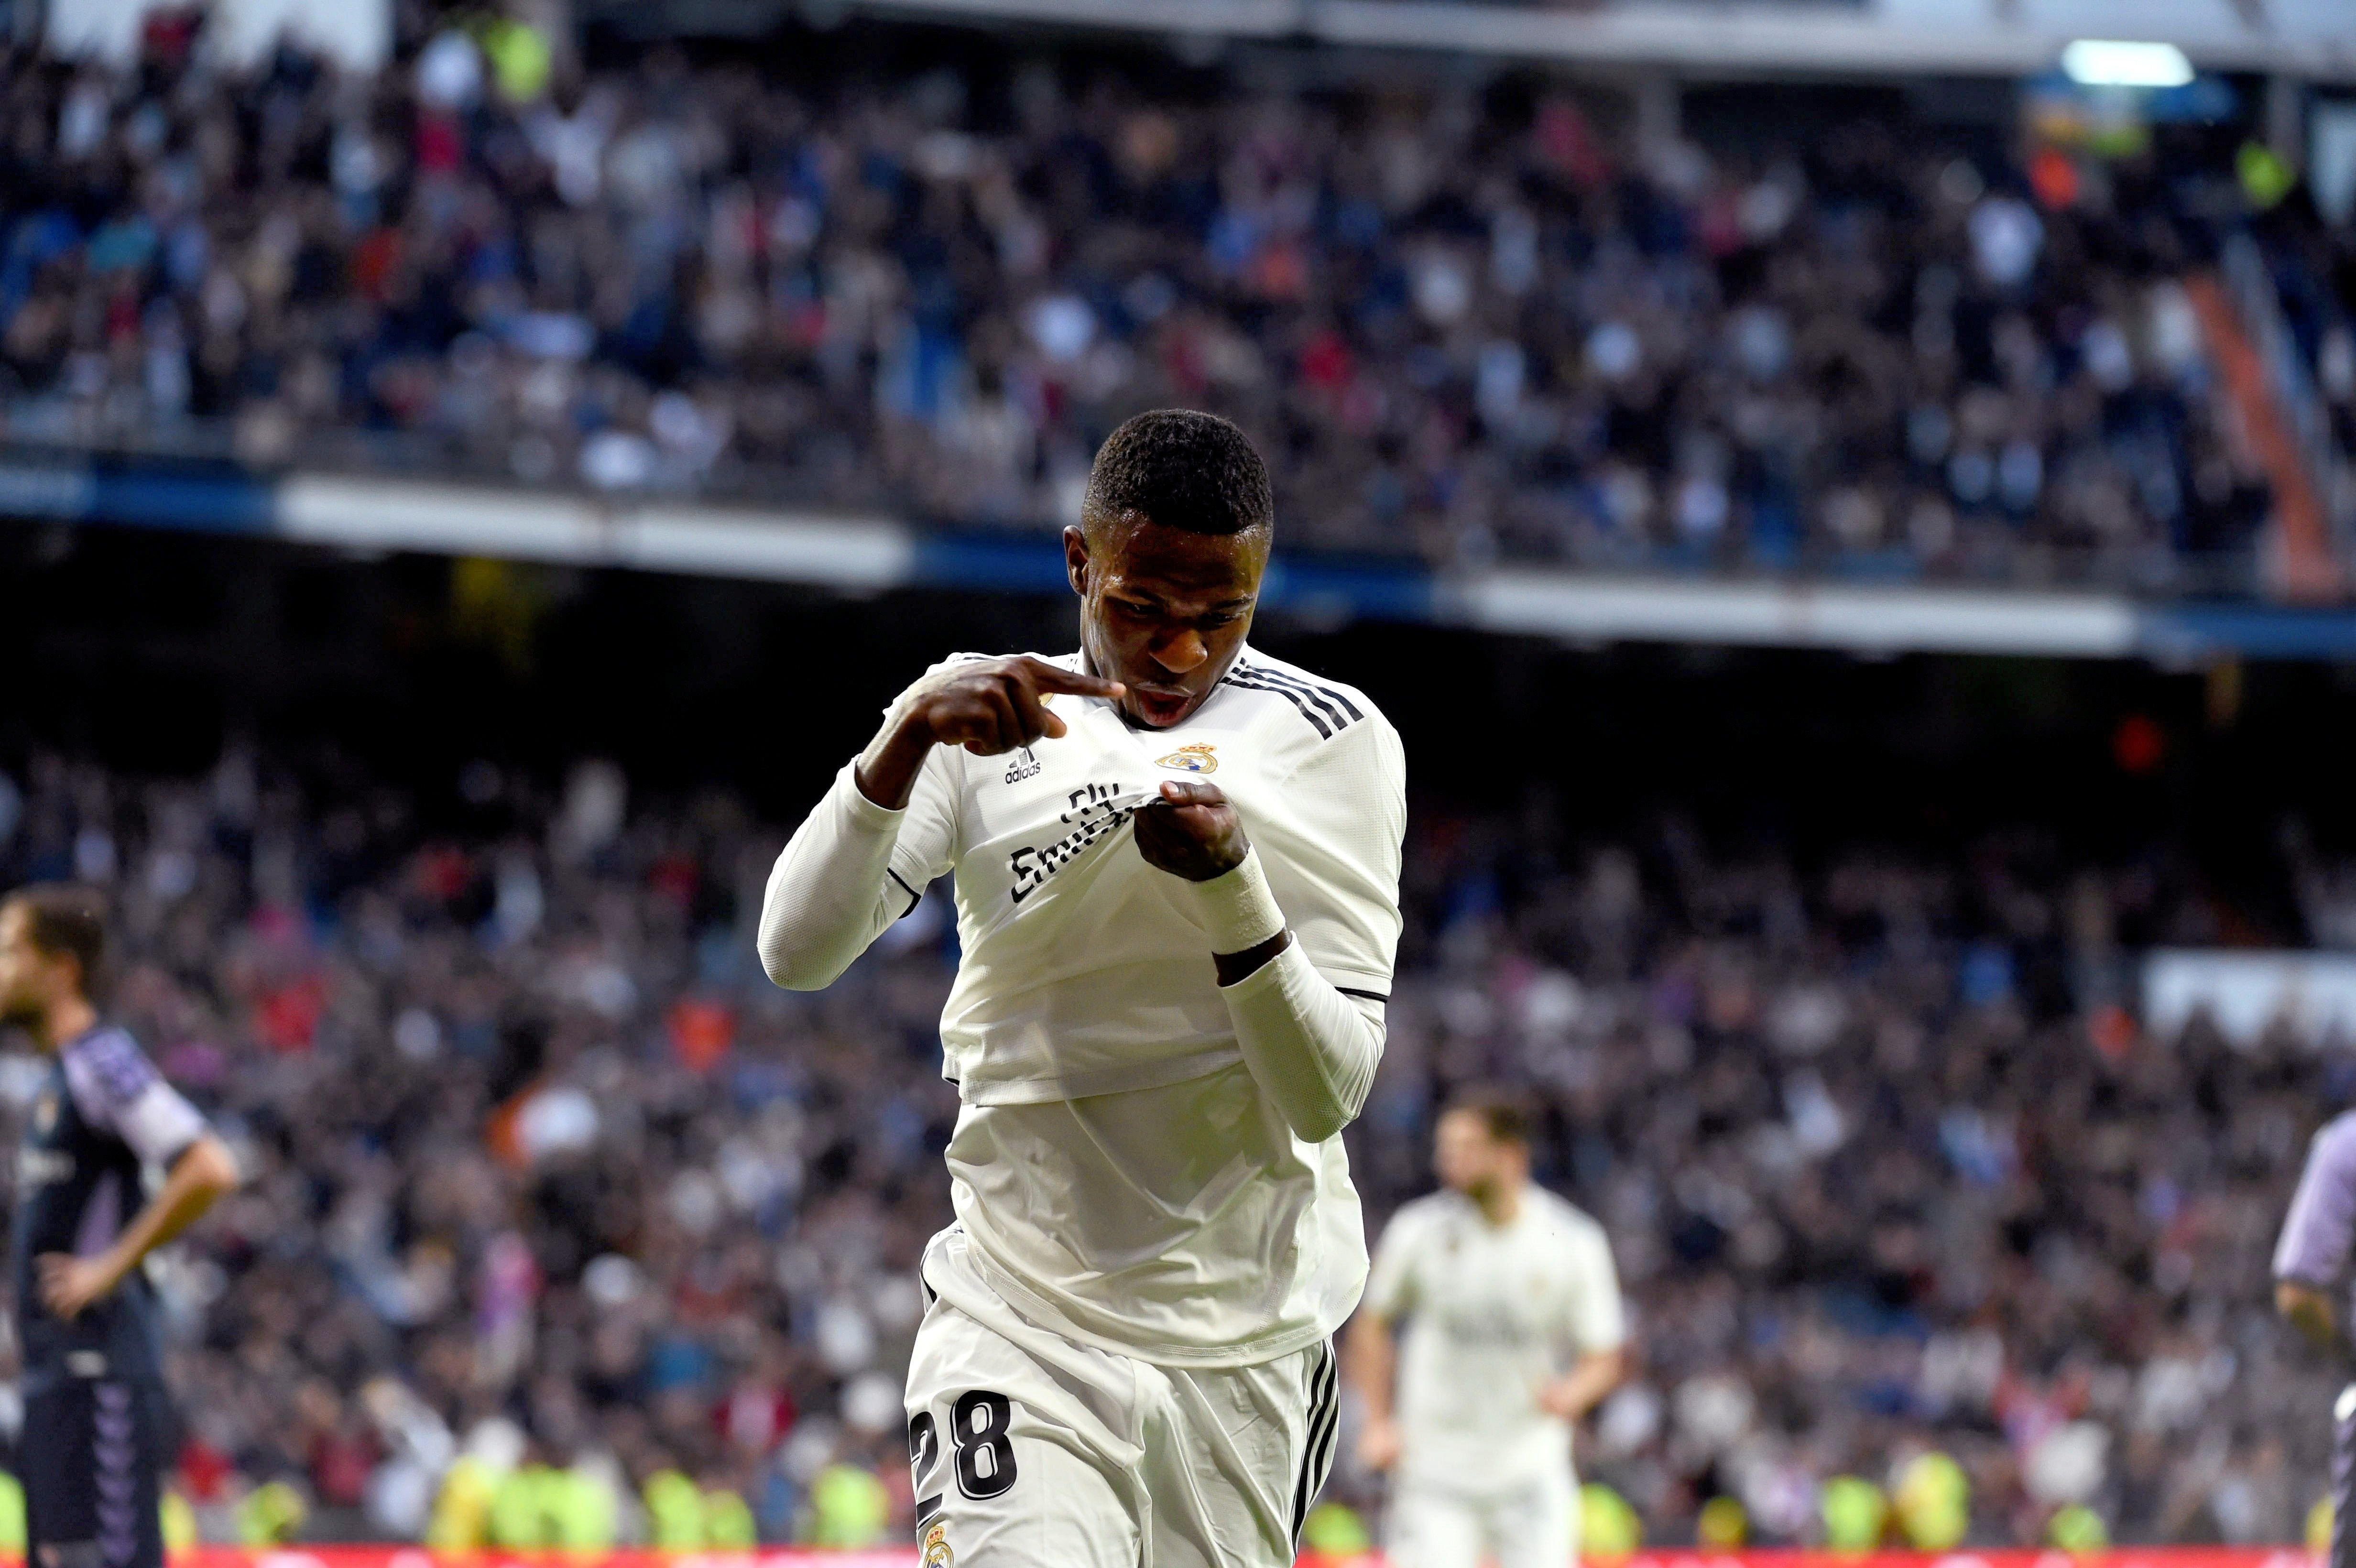 El Madrid s'alia amb la fortuna per canviar de dinàmica (2-0)